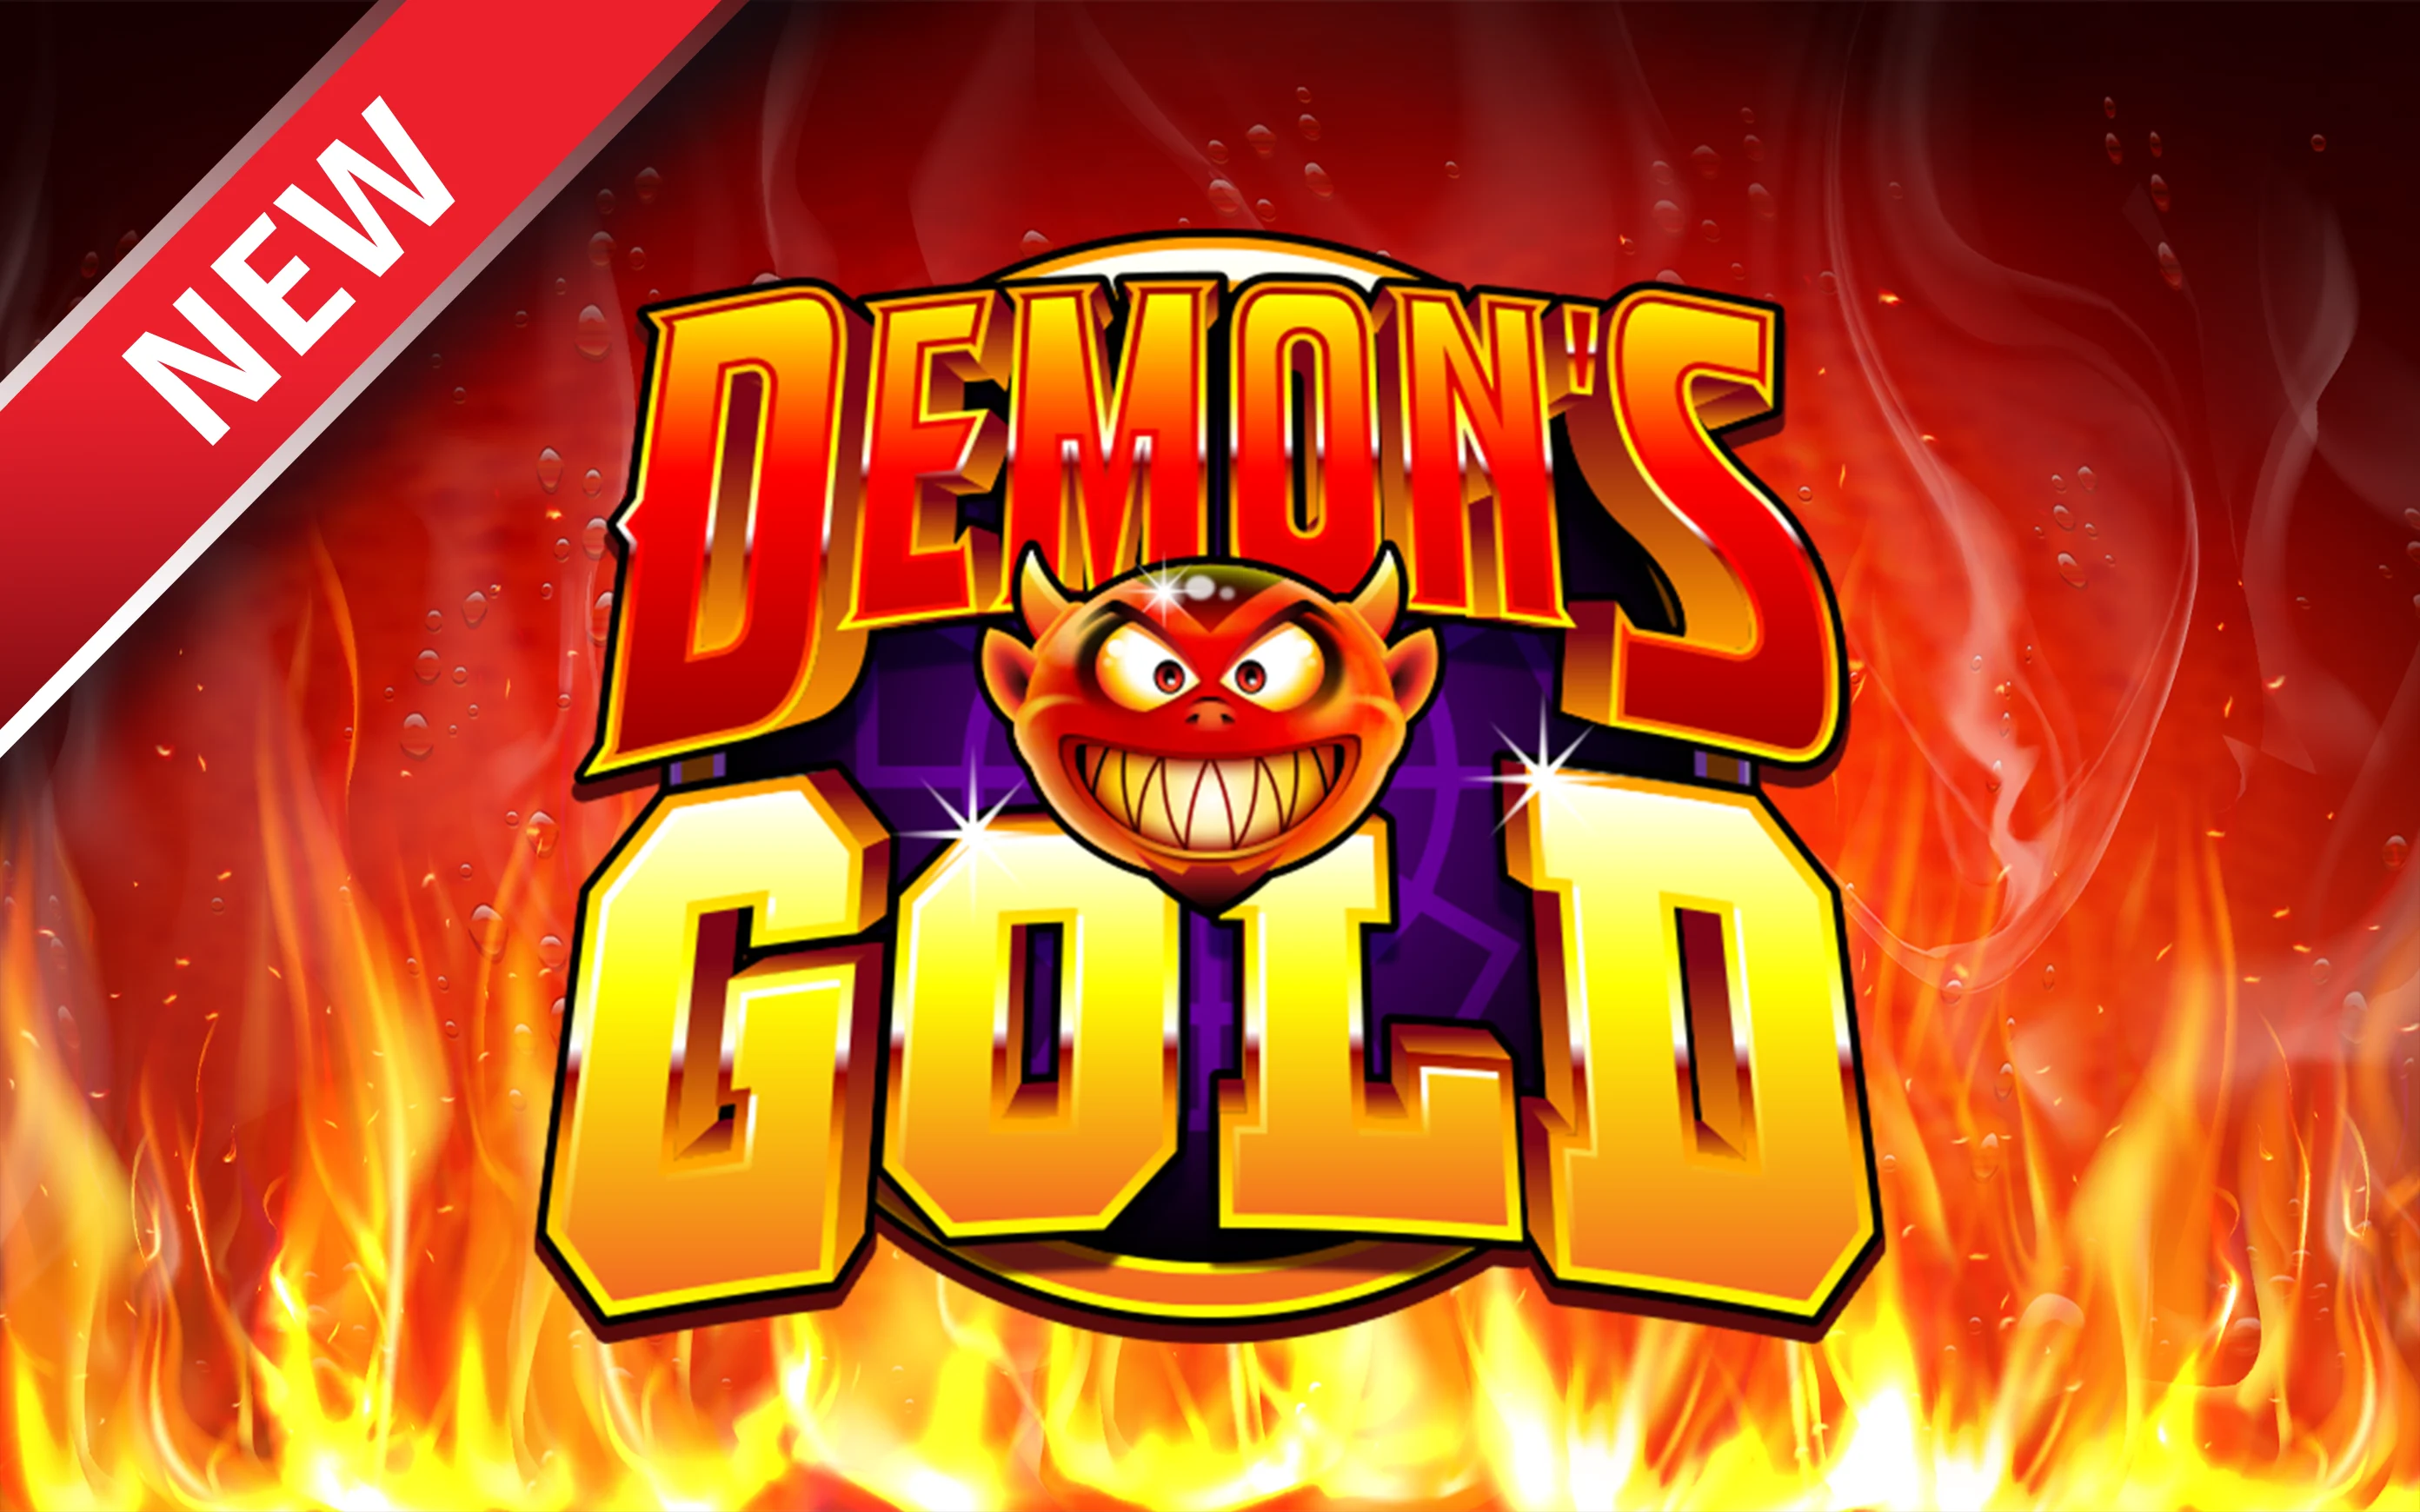 Starcasino.be online casino üzerinden Demon's Gold oynayın